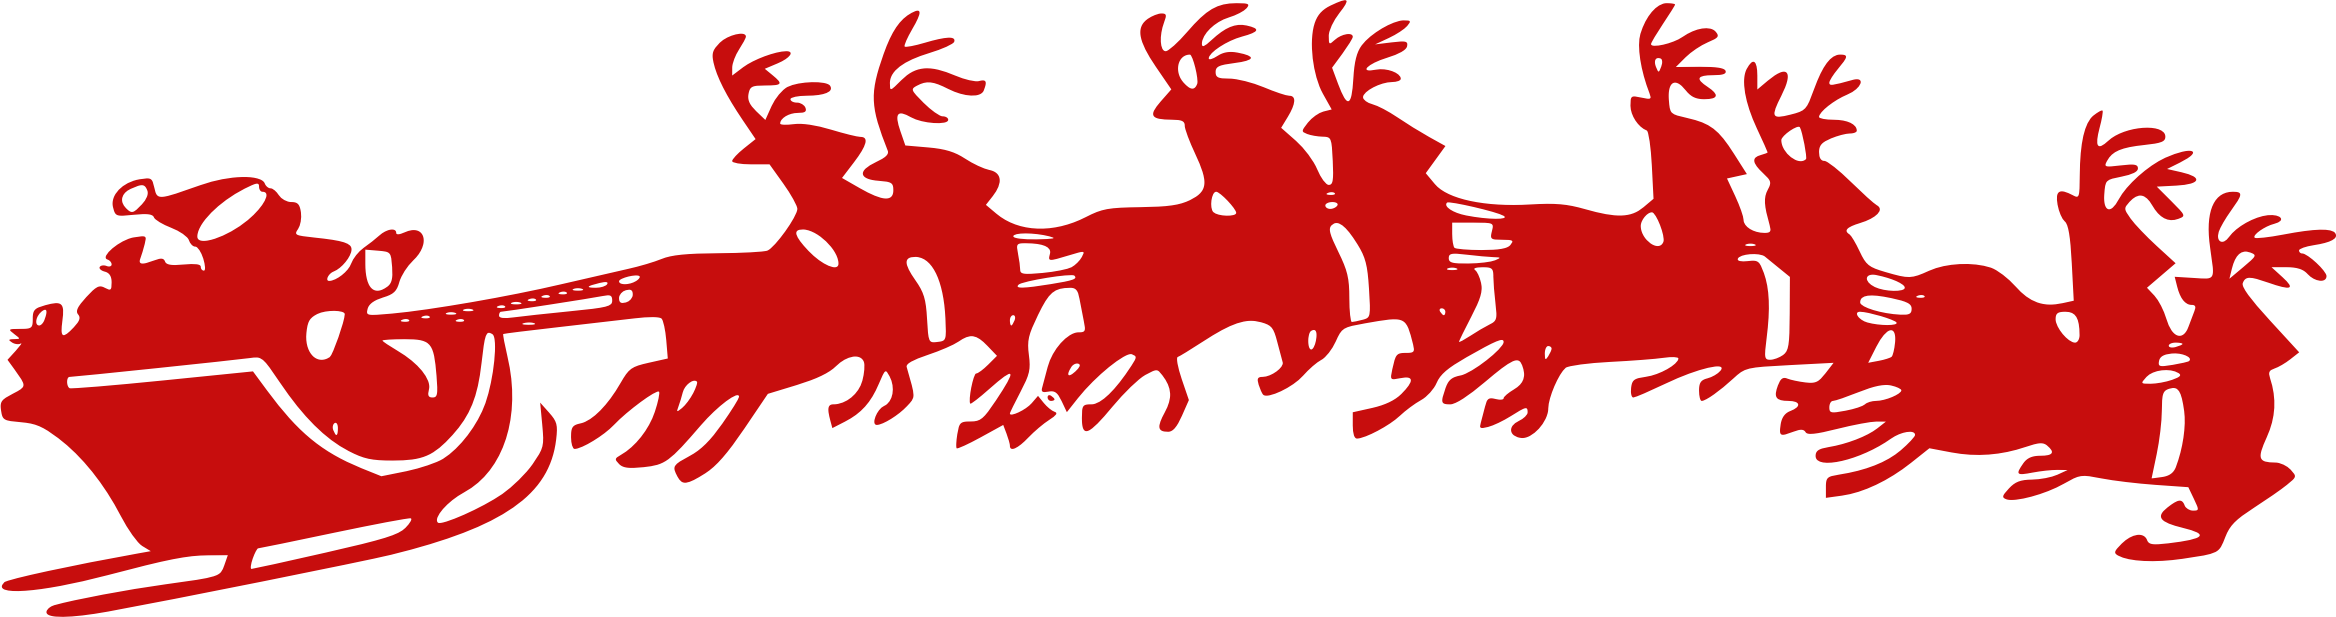 Reindeer Sleigh PNG Free Image